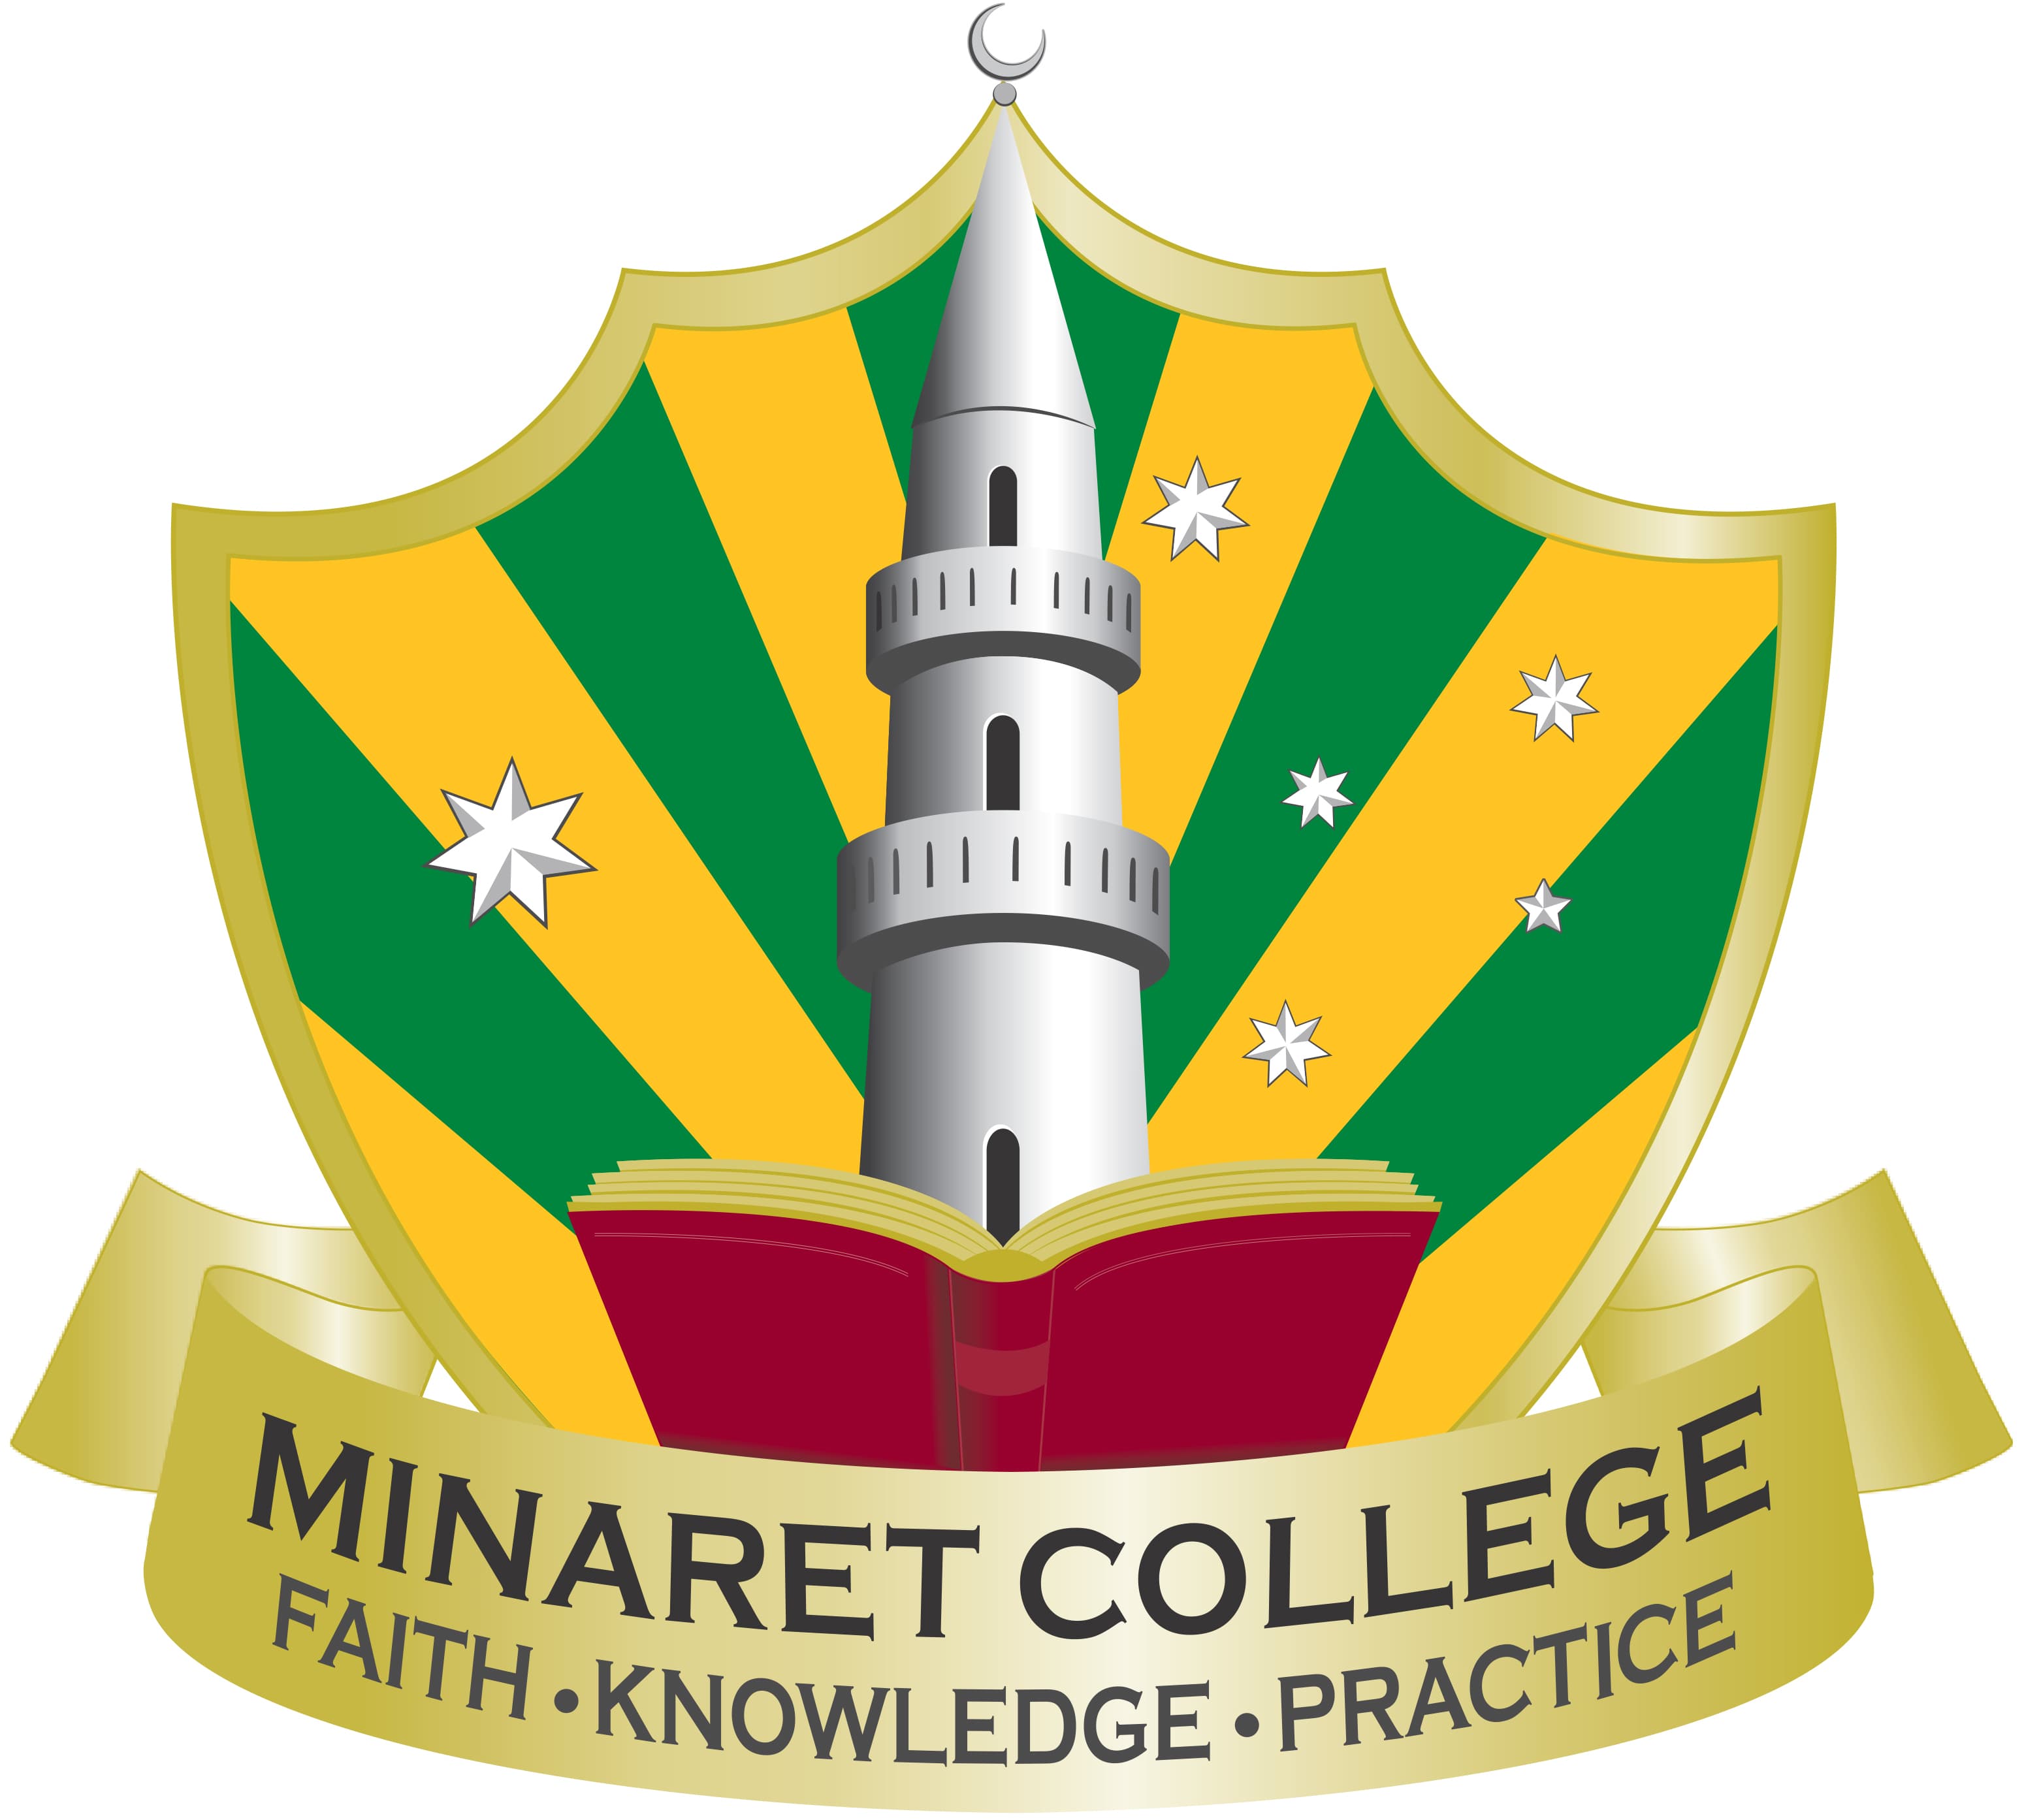 Minaret College logo.jpg